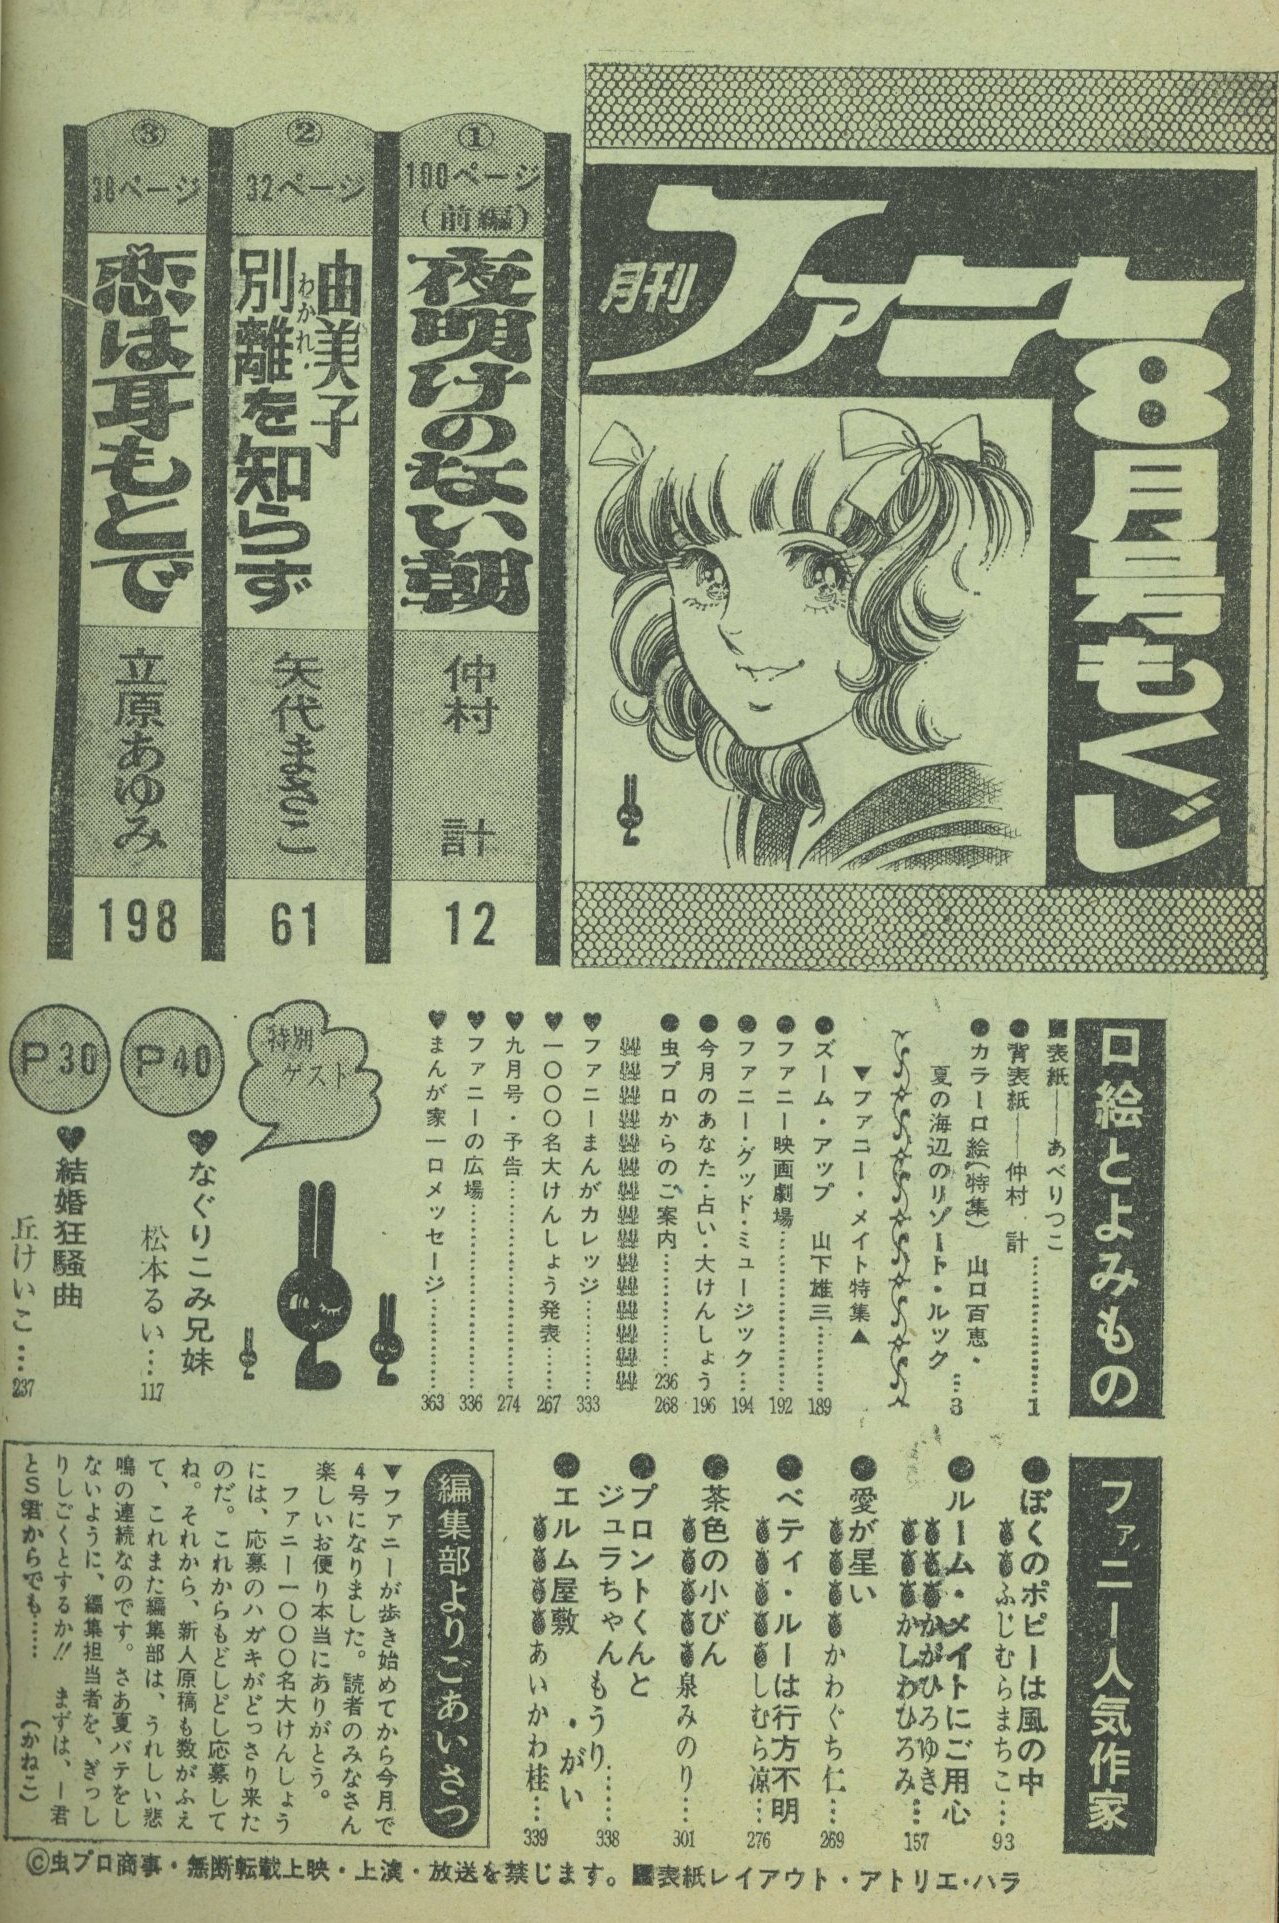 虫プロ商事 1973年(昭和48年)の漫画雑誌 月刊ファニー1973年(昭和48年 